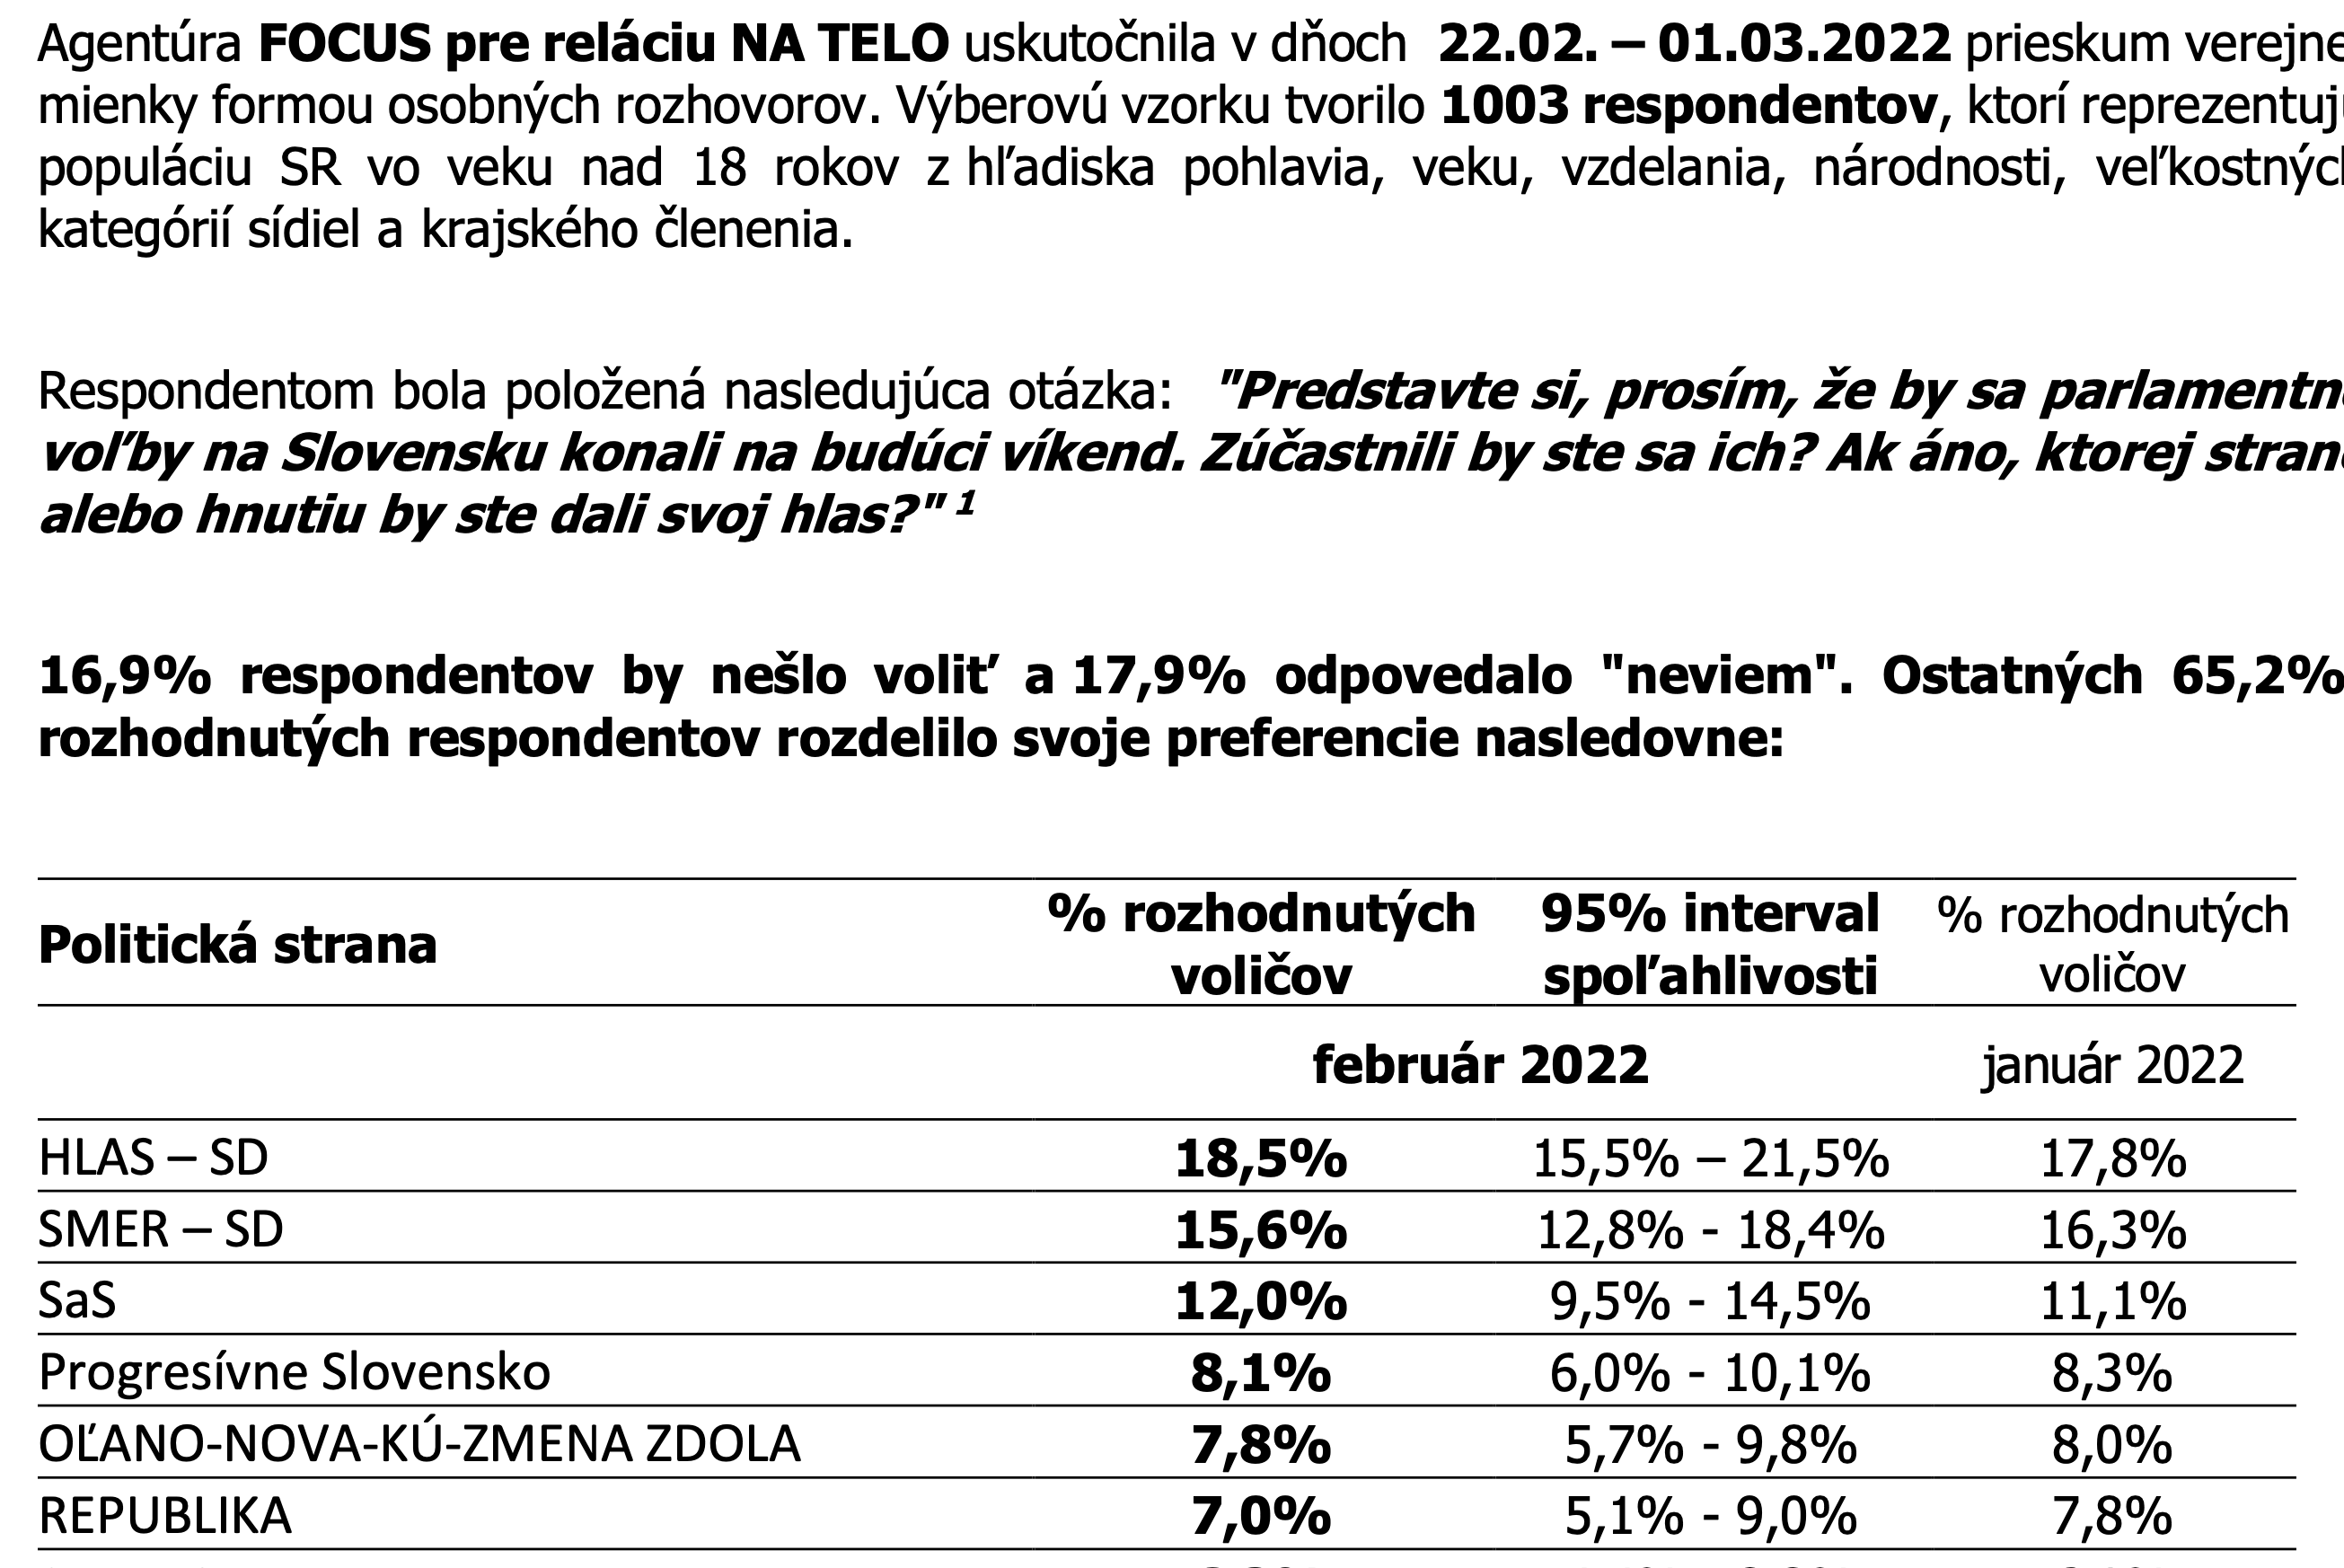 Prieskum volebných preferencií z februára 2022.